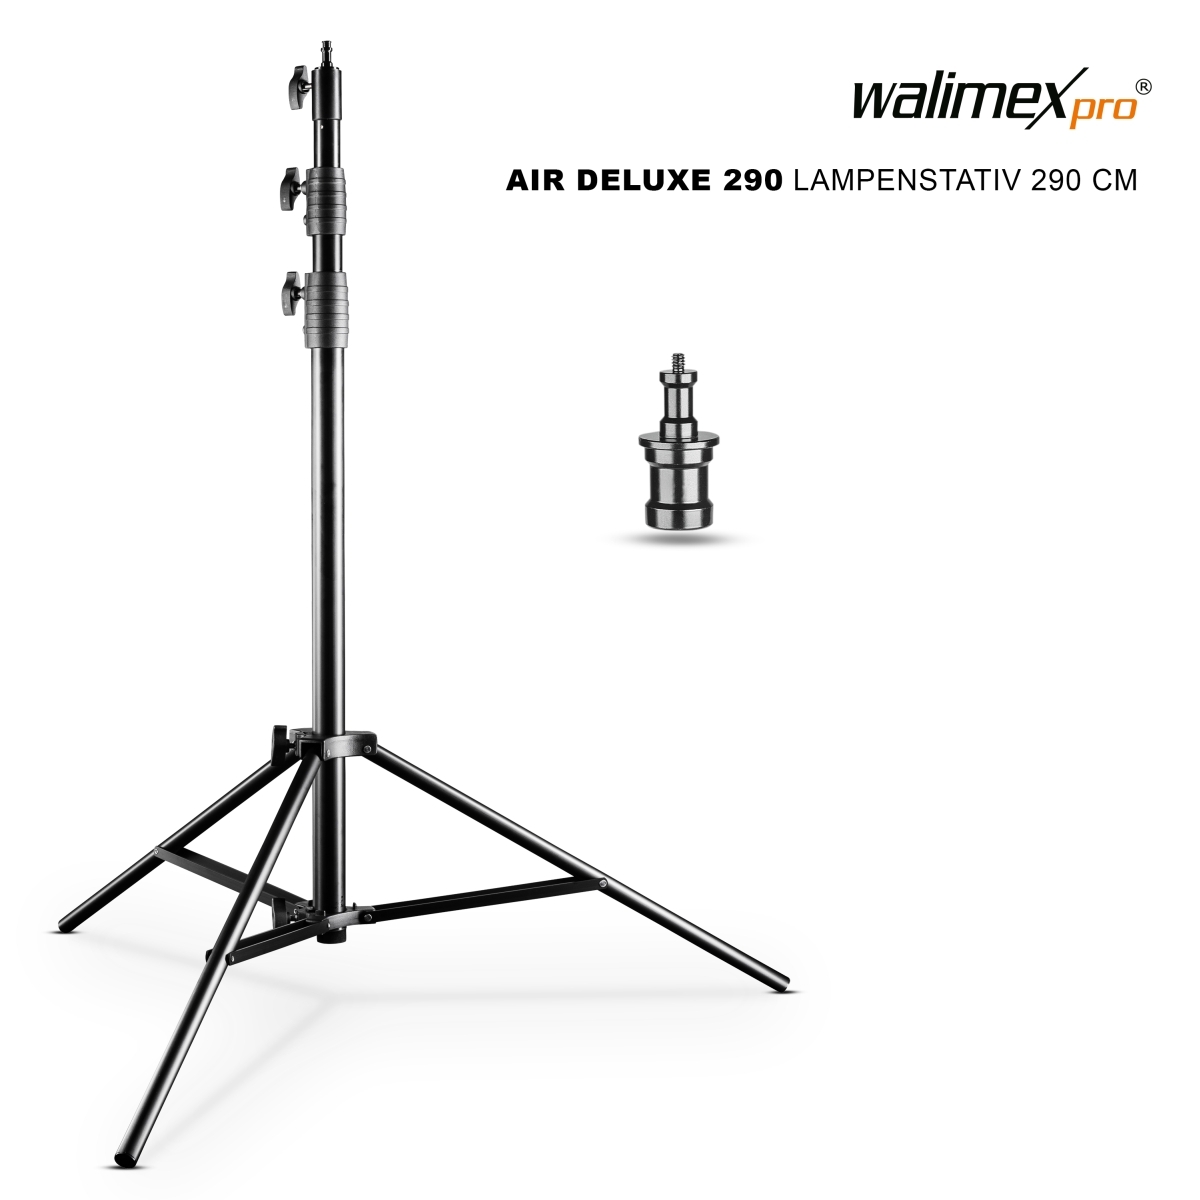 & Walimex Pro WT-806 Lampenstativ 120-220 cm Walimex Galgen mit Beschwerungstasche mit Federdämpfung, max. 256cm, 6 kg Traglast, Lichtstativ Leuchtenstativ aus Aluminium 